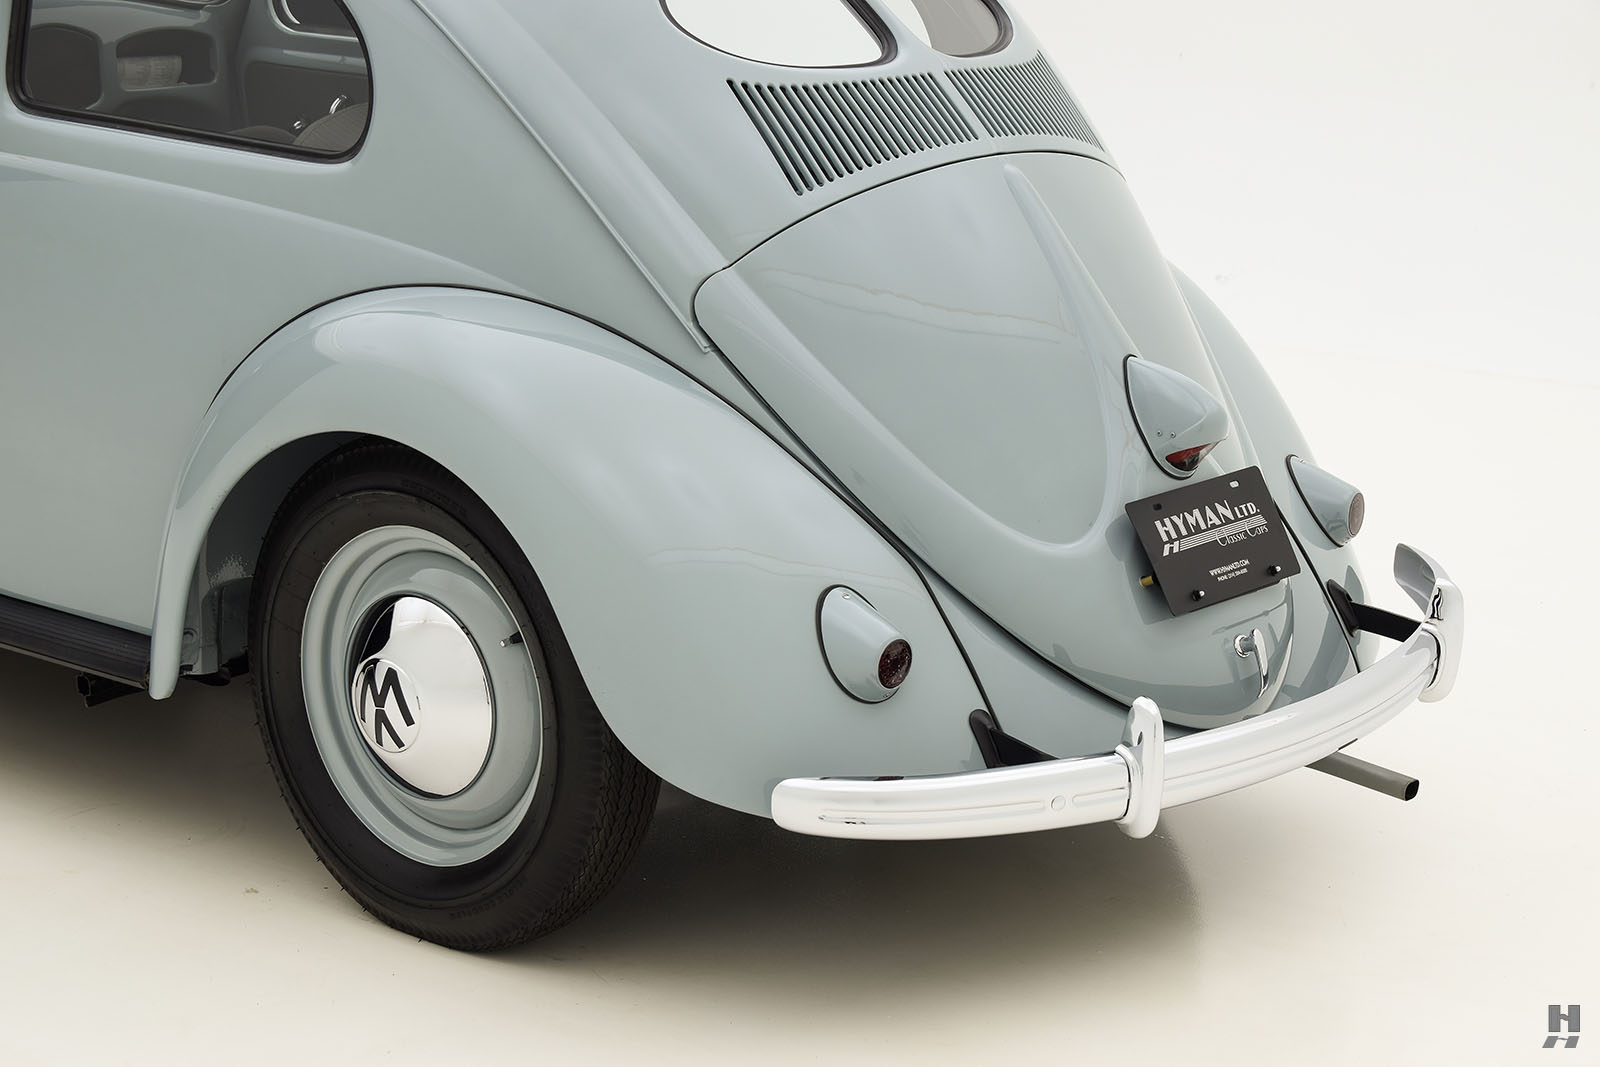 1954 volkswagen beetle deluxe